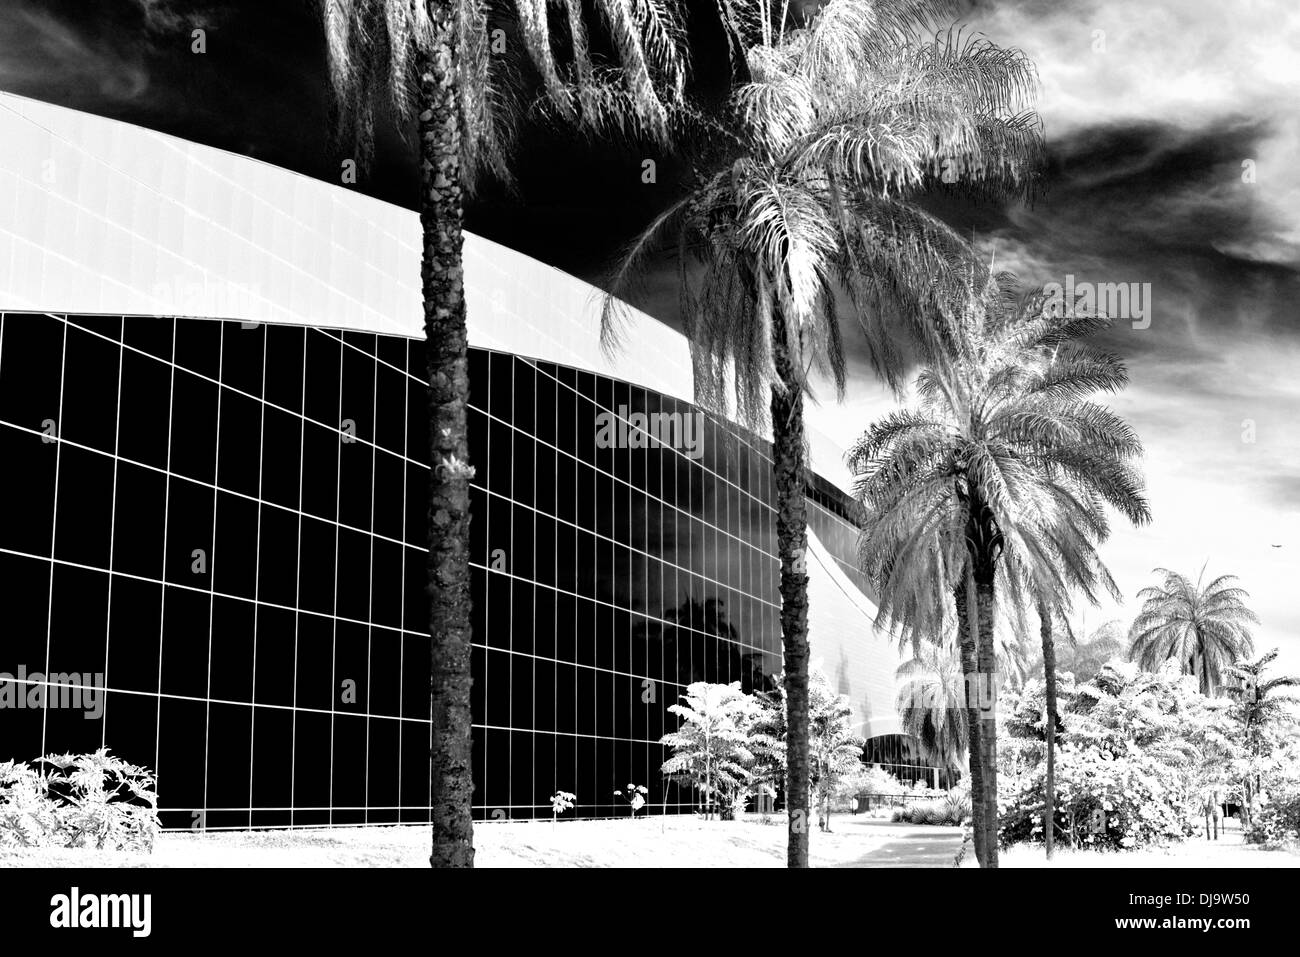 Il Brasile, Brasilia: palme e la facciata in vetro del centro congressi Ulysses Guimaraes Foto Stock